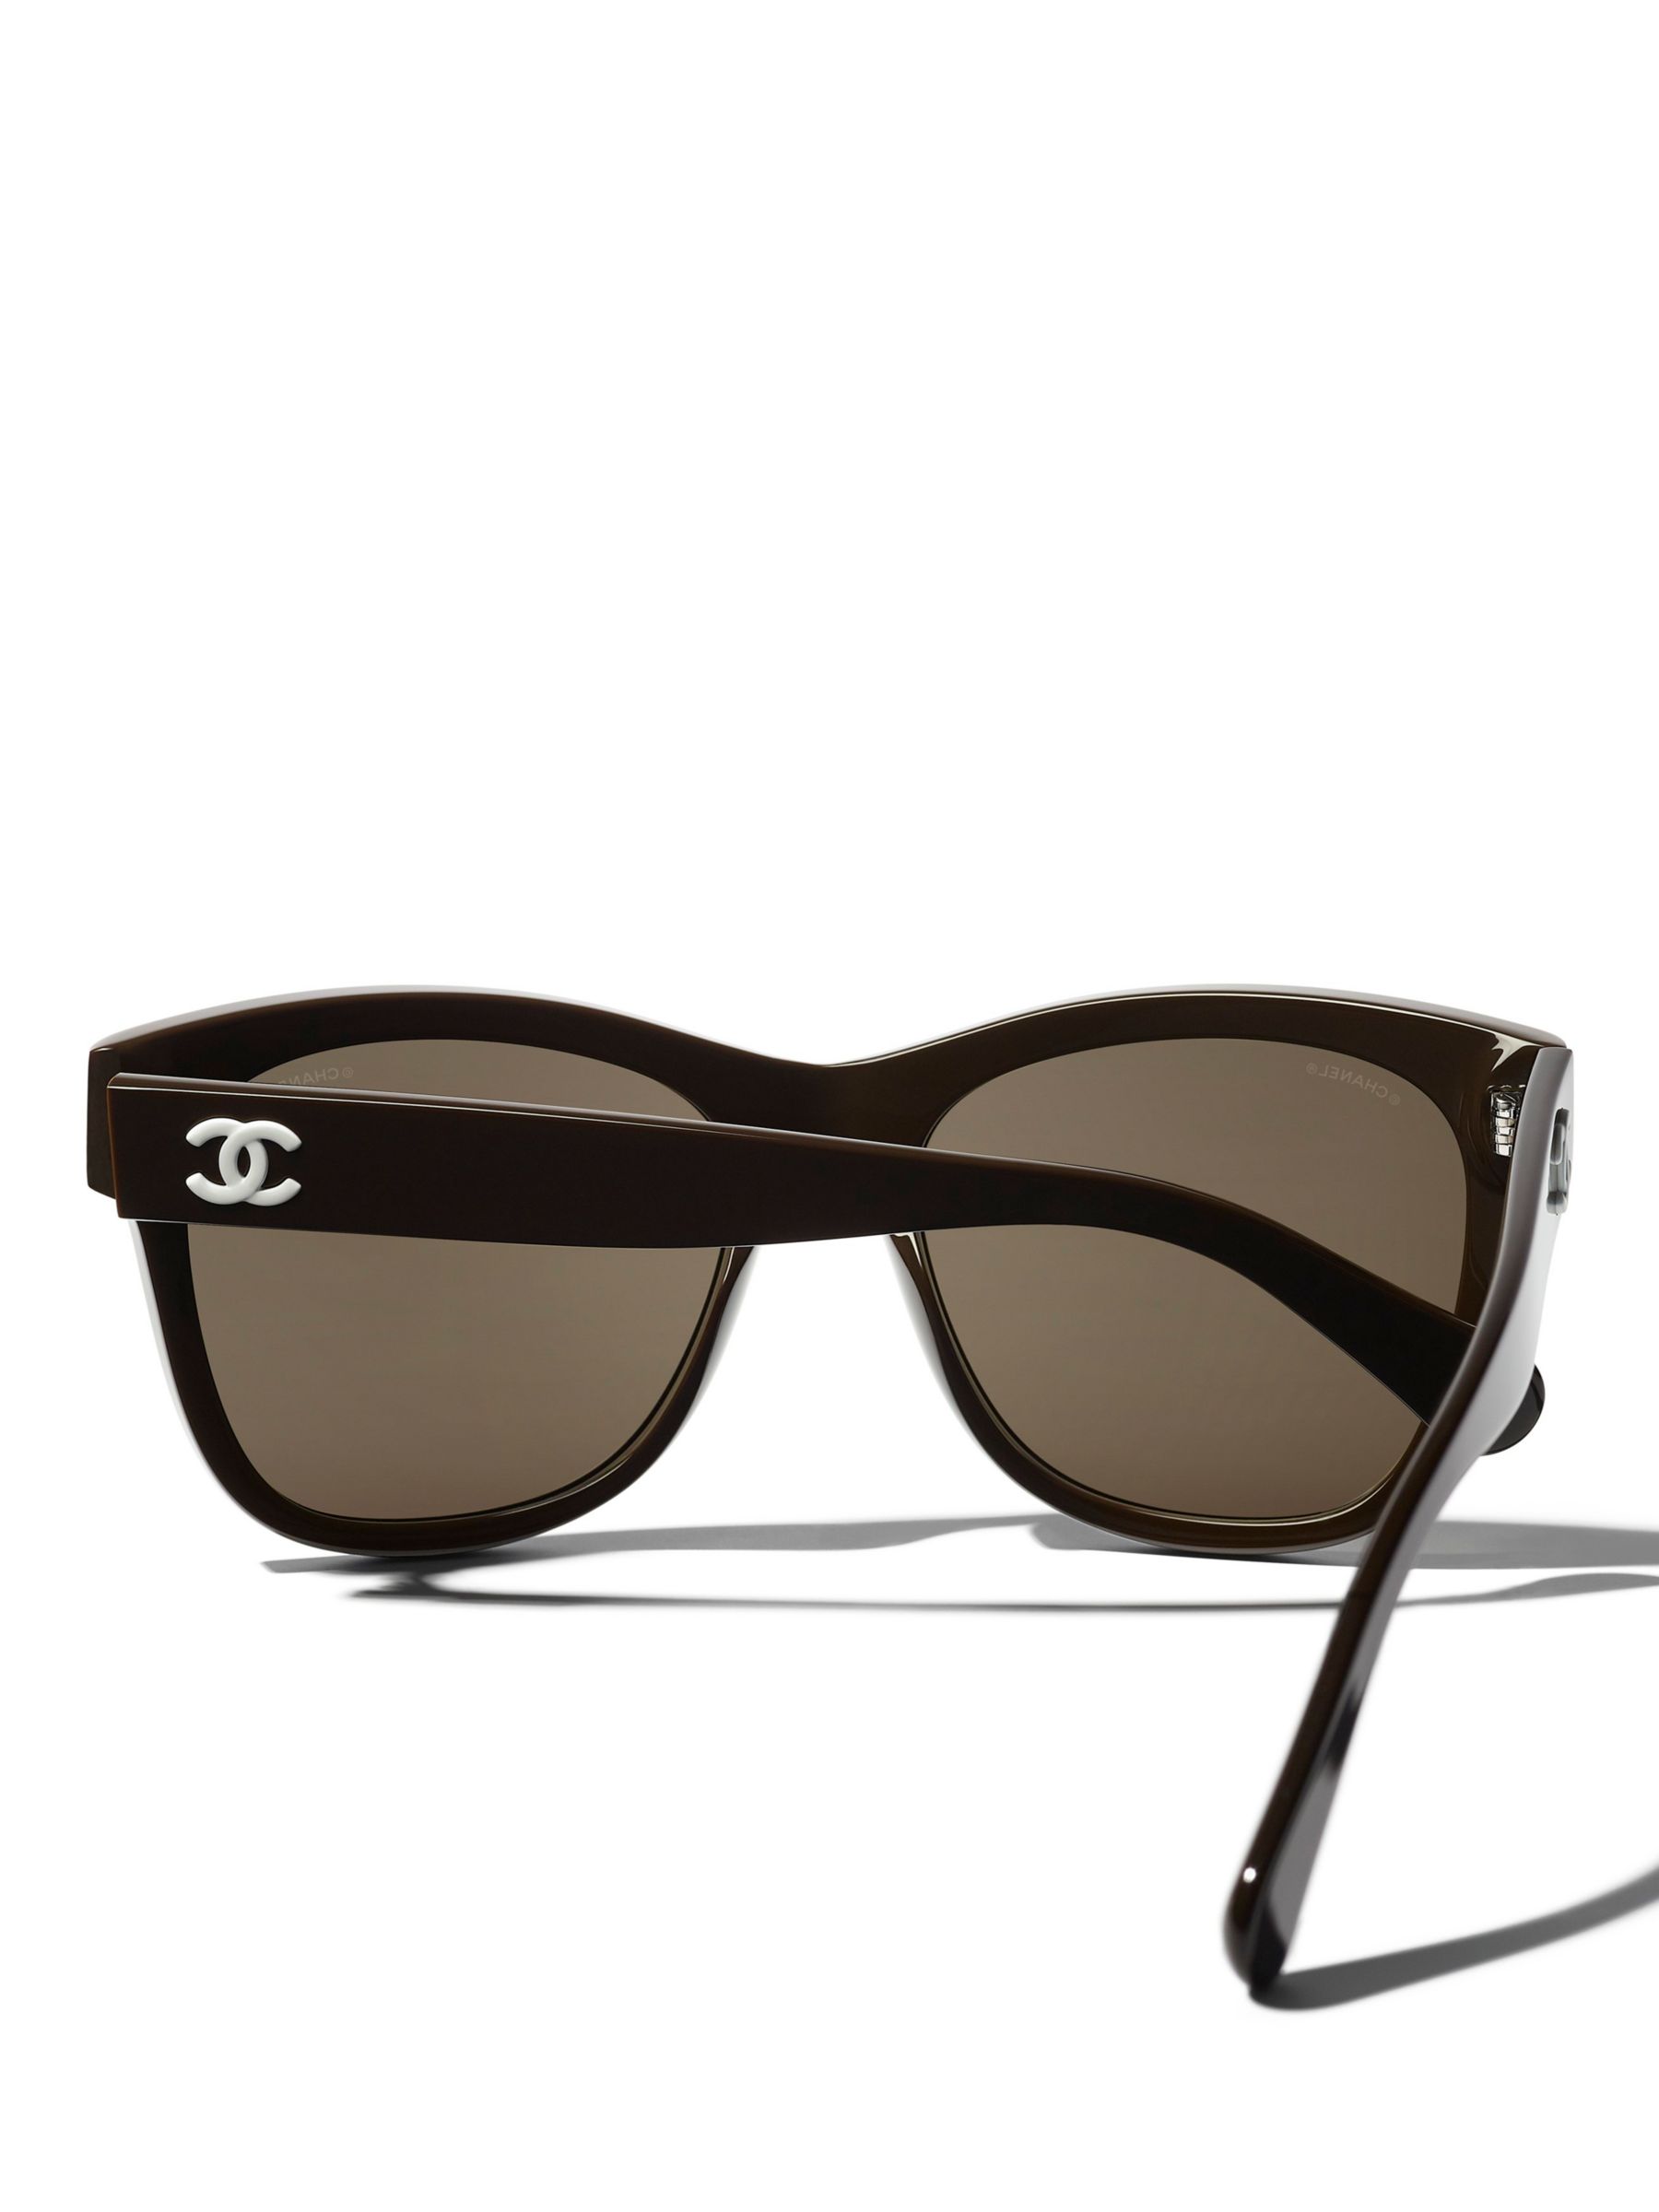 Chanel Square Sunglasses CH5380 Brown